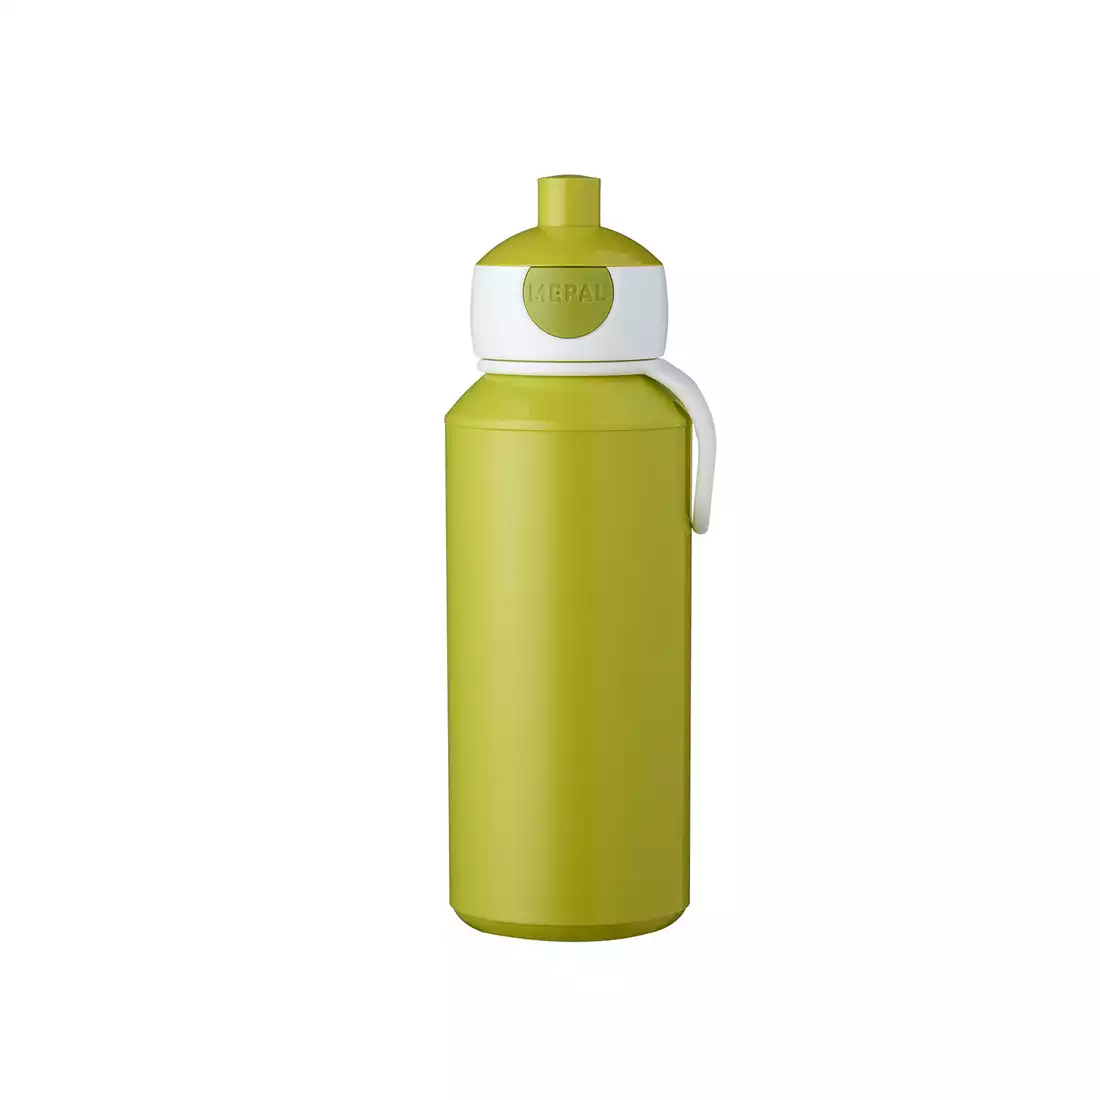 MEPAL POP-UP CAMPUS láhev na vodu pro děti 400 ml, limetka